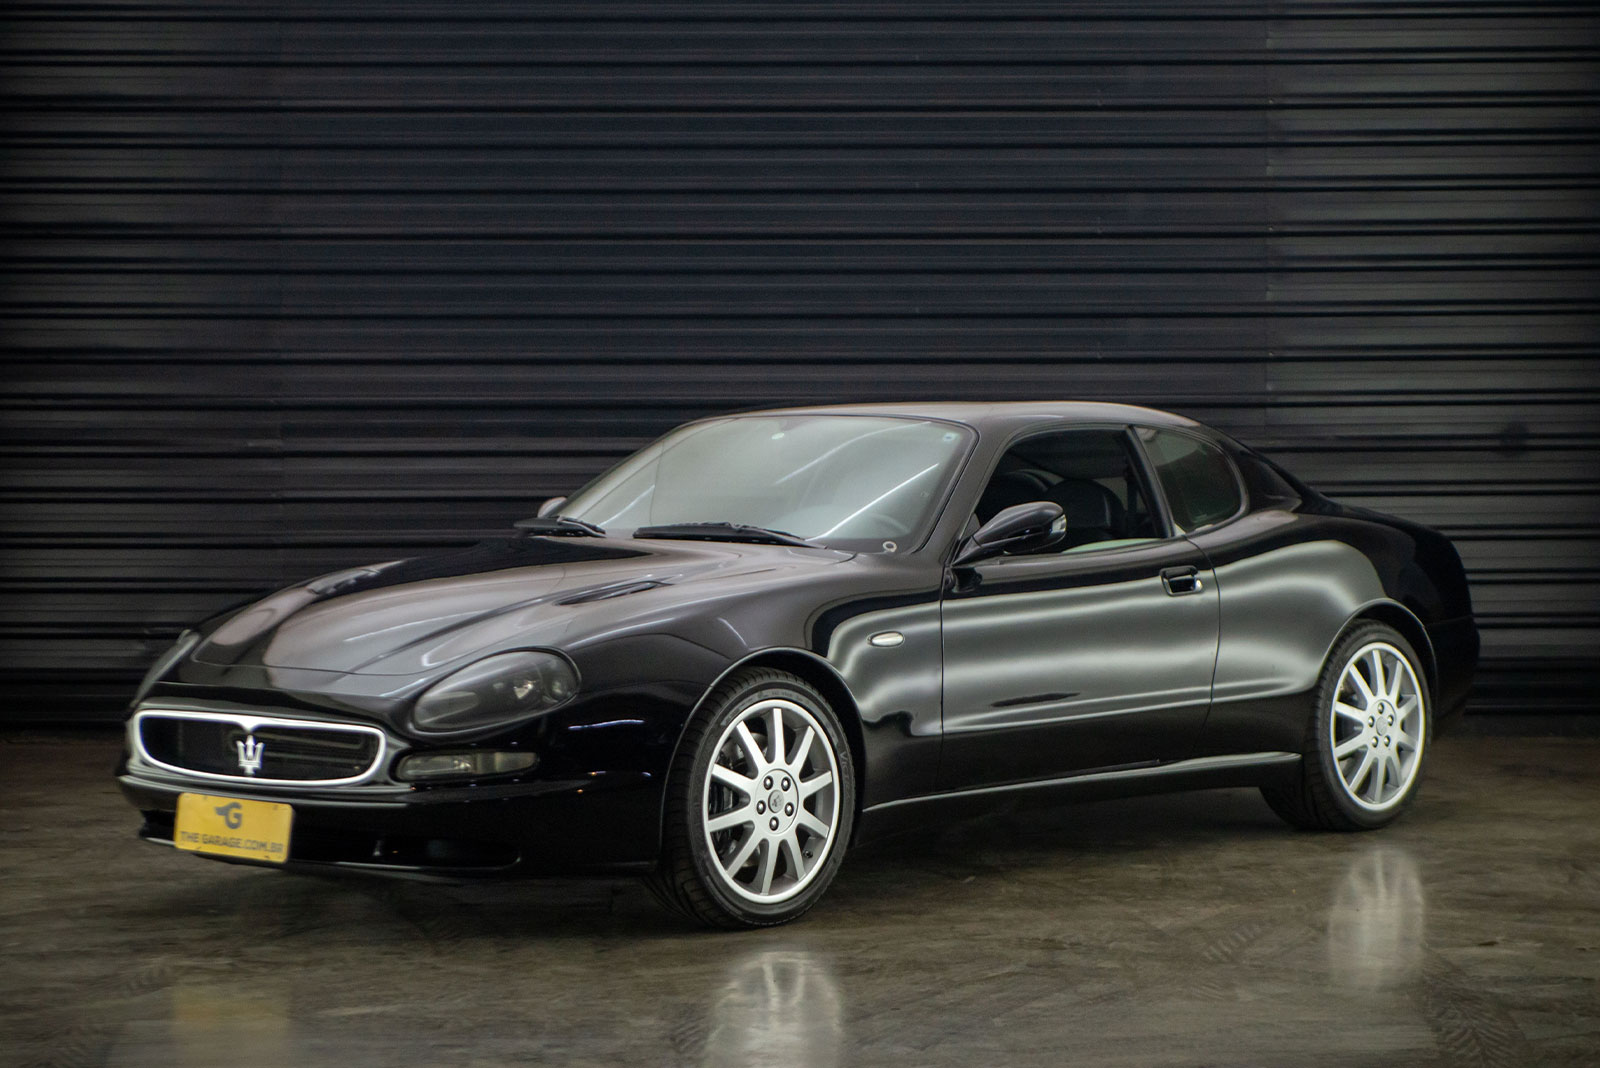 2000-Maserati-3200GT-V8-Biturbo-venda-sao-paulo-sp-for-sale-the-garage-classicos-a-melhor-loja-de-carros-antigos-acervo-de-carros